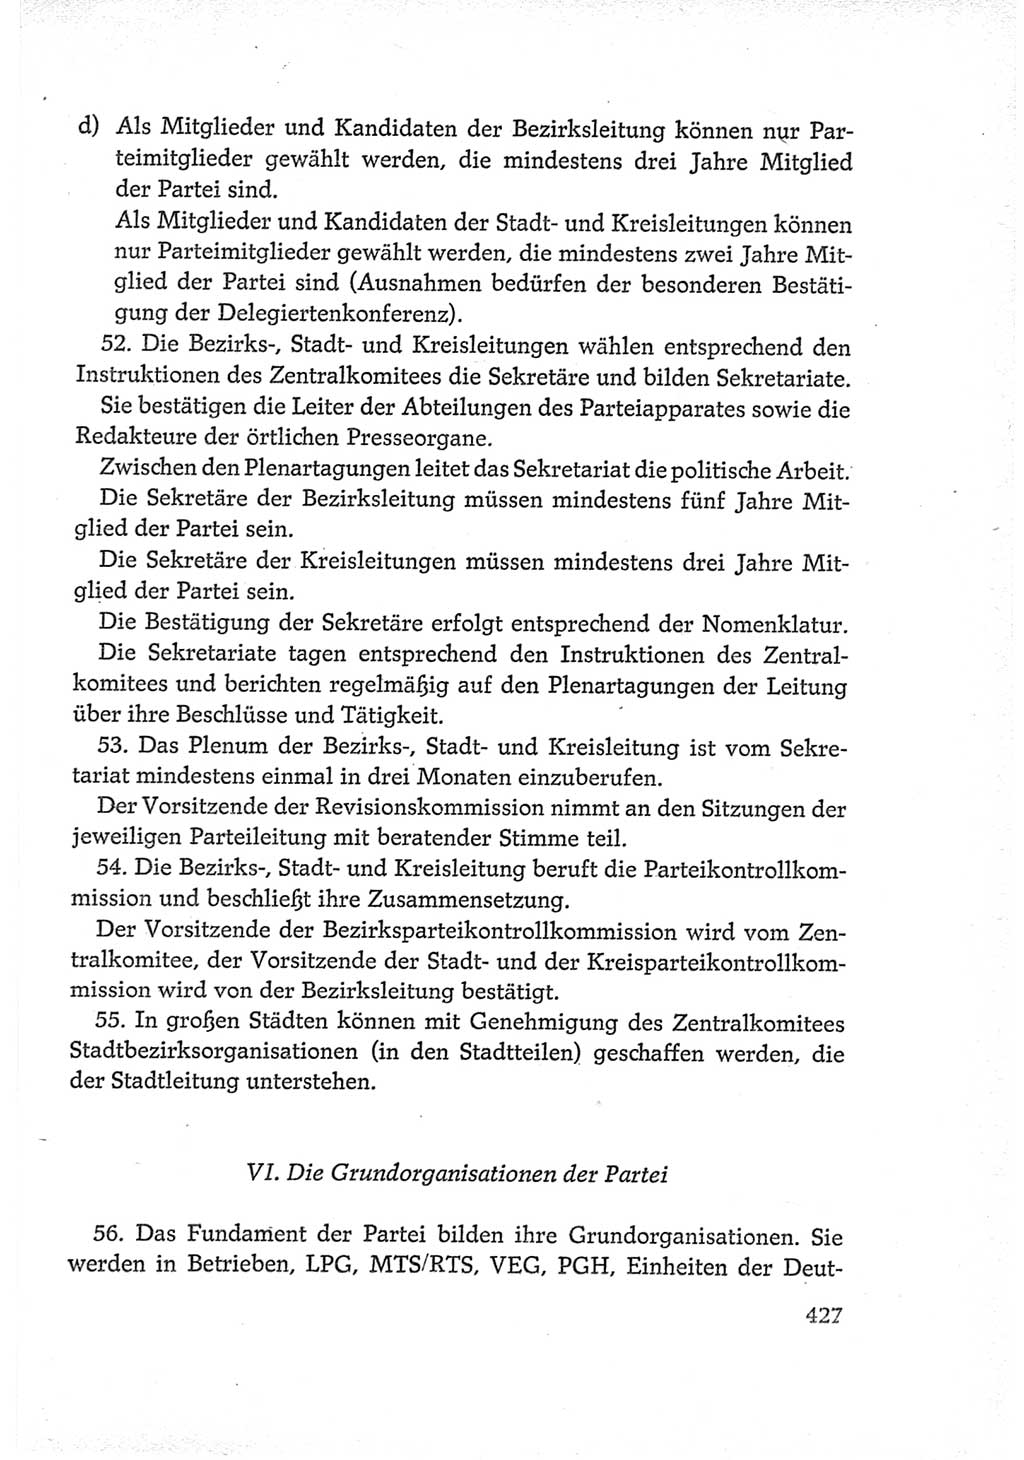 Protokoll der Verhandlungen des Ⅵ. Parteitages der Sozialistischen Einheitspartei Deutschlands (SED) [Deutsche Demokratische Republik (DDR)] 1963, Band Ⅳ, Seite 427 (Prot. Verh. Ⅵ. PT SED DDR 1963, Bd. Ⅳ, S. 427)